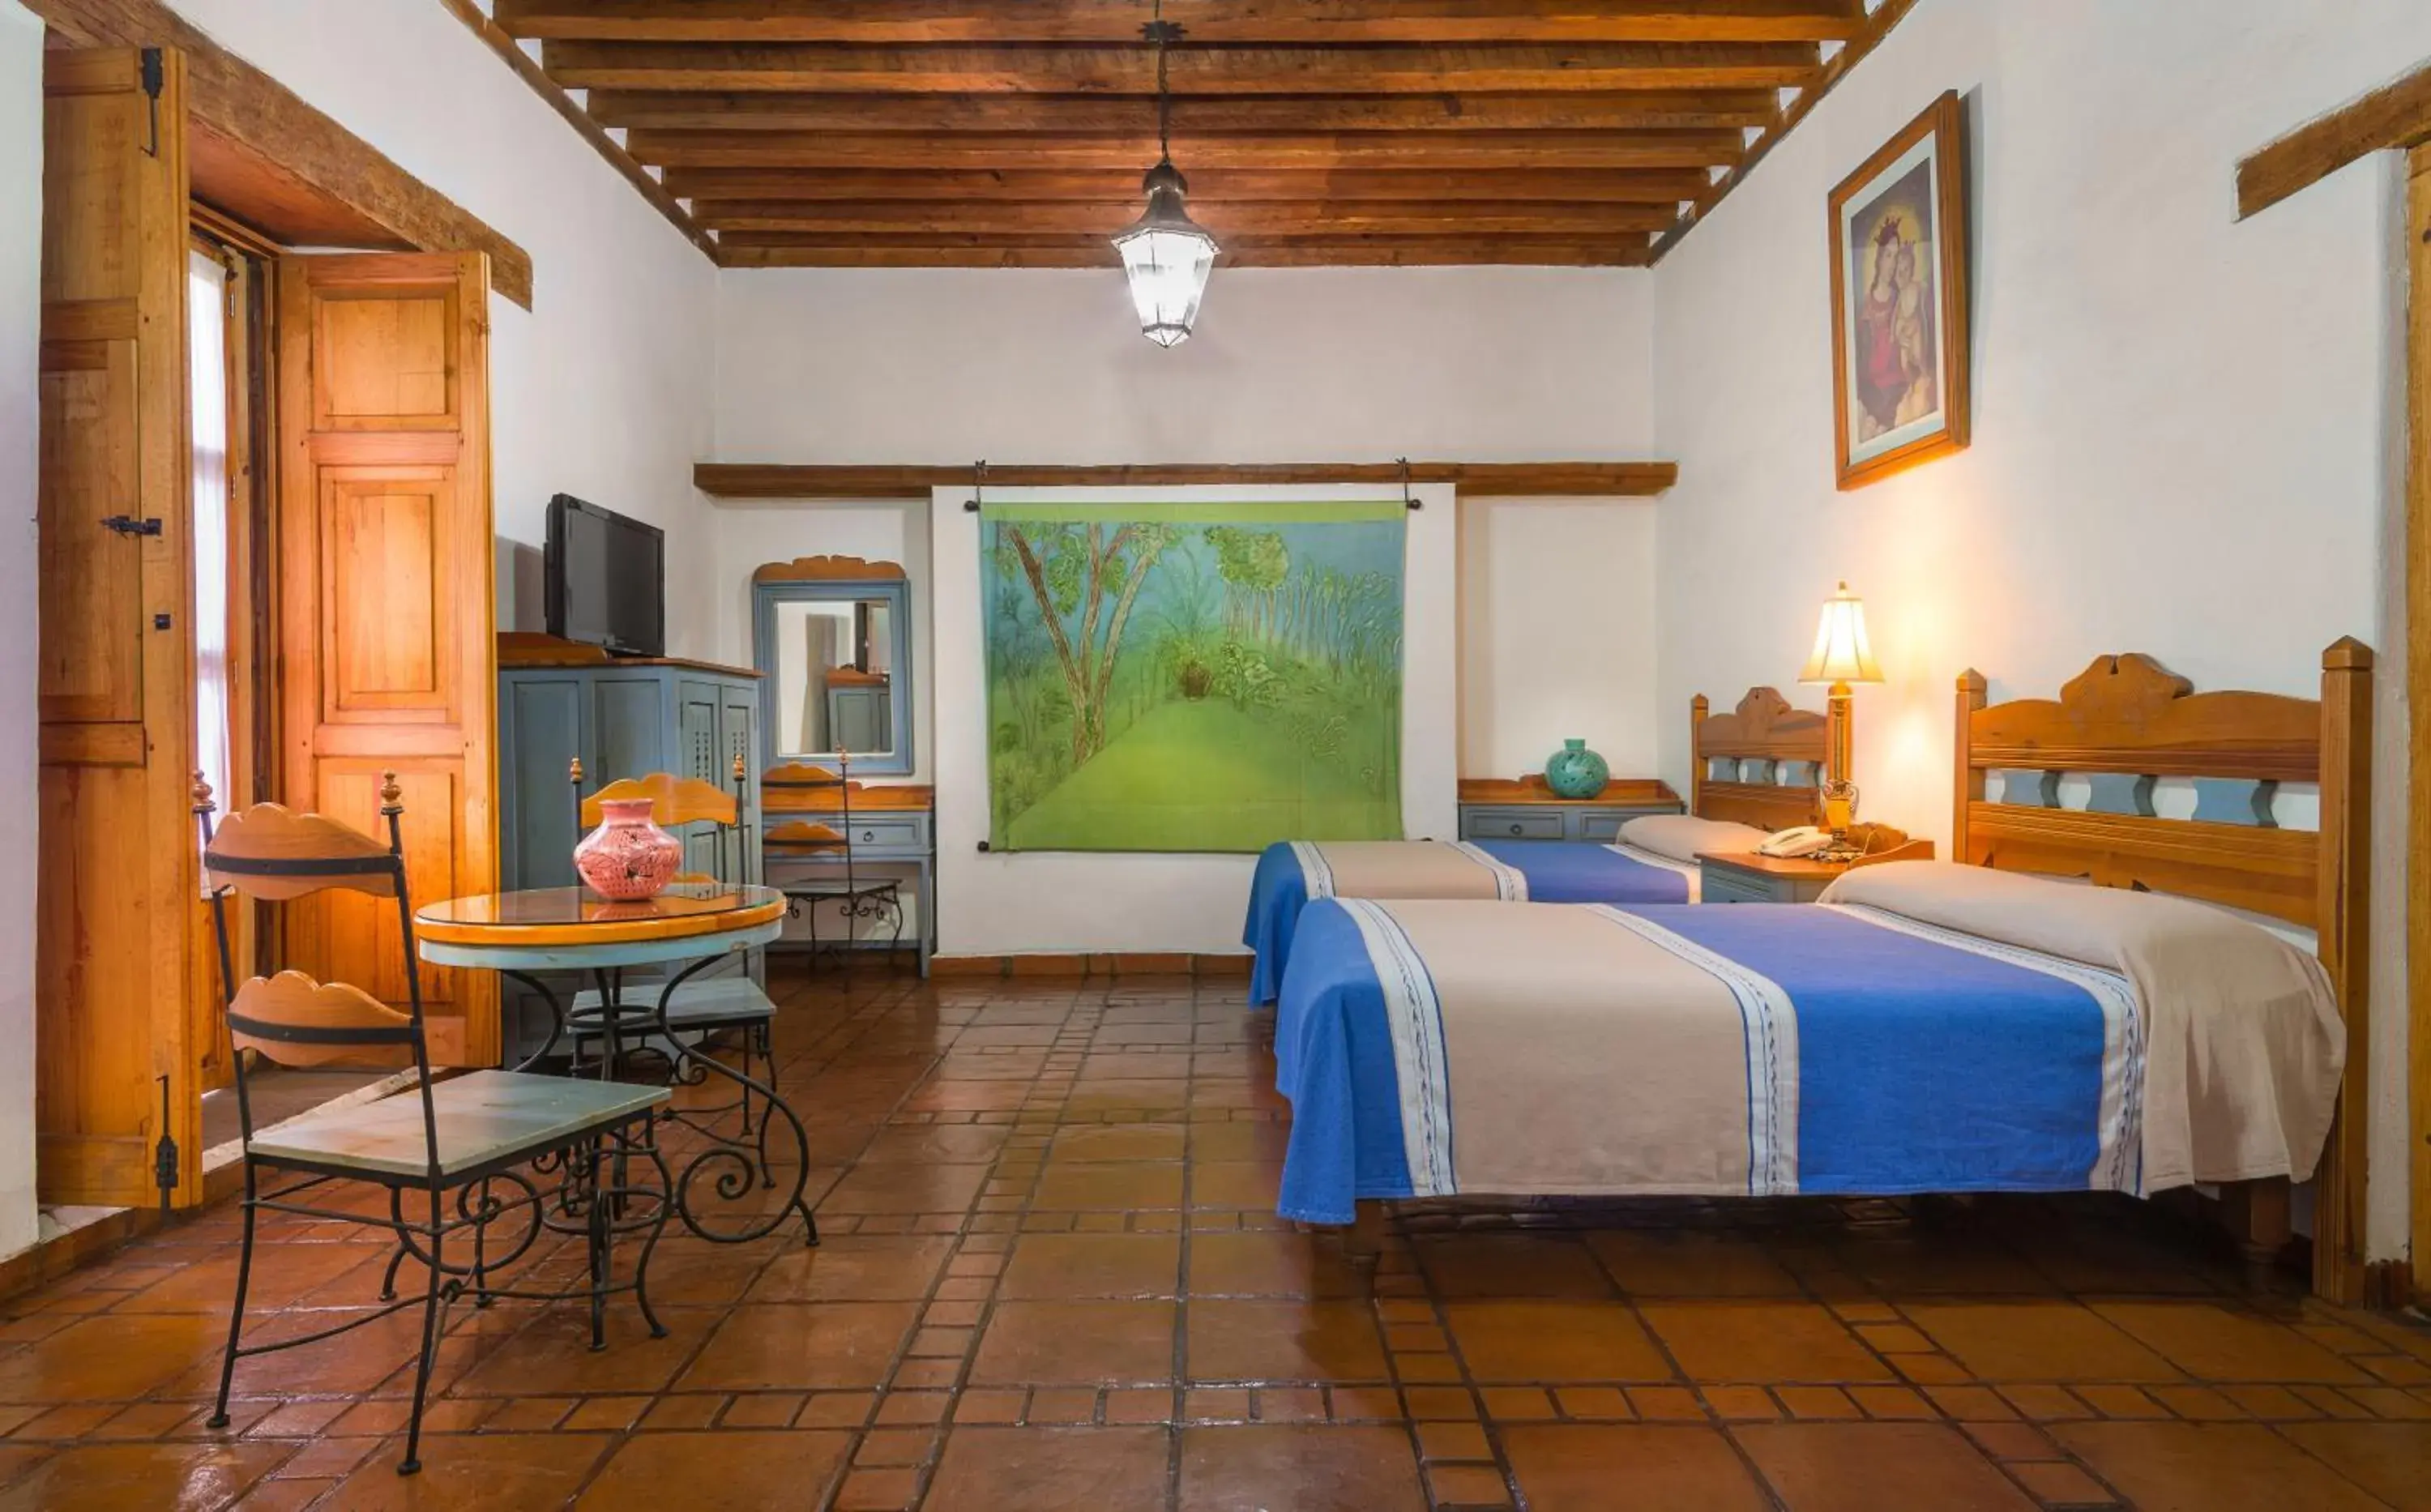 Photo of the whole room in Hotel Casa del Refugio